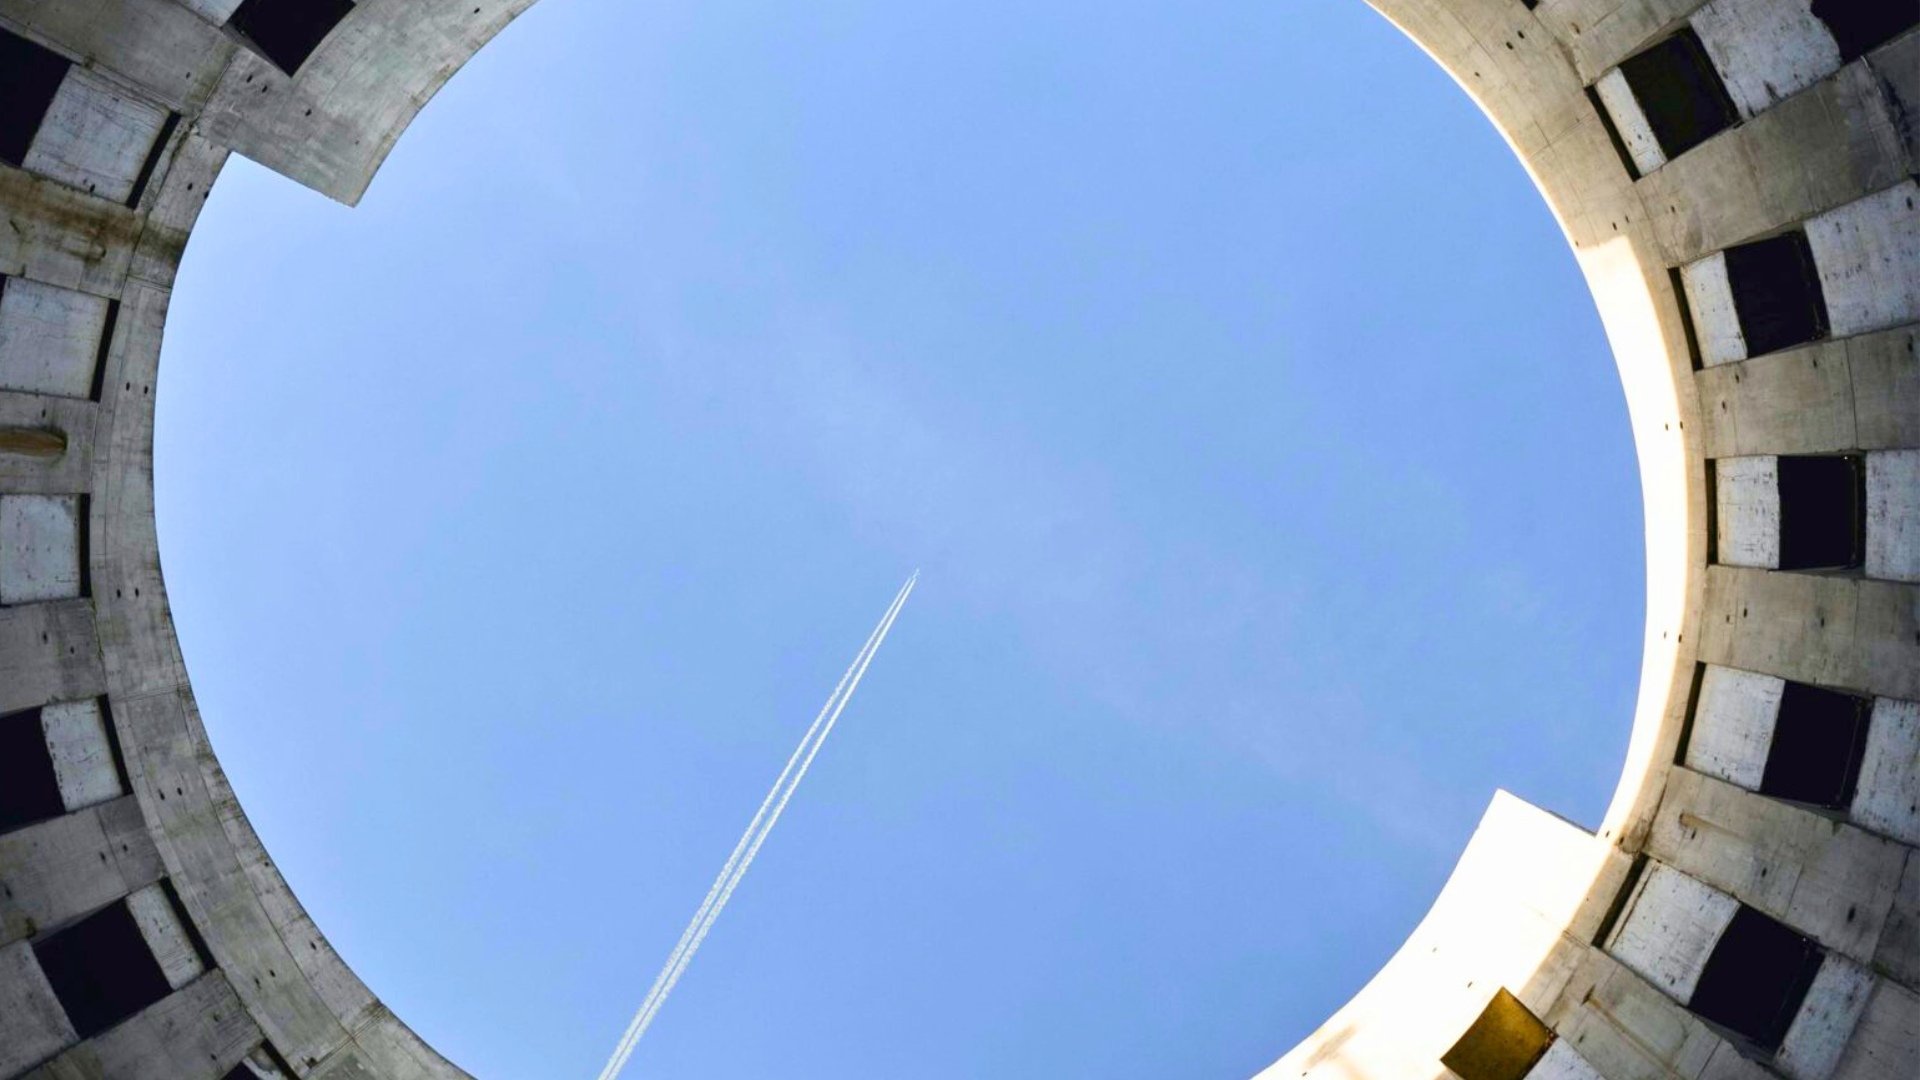 Vista dal basso di un cerchio con un aereo nel messo a simboleggiare come il PNRR abbia centrato il punto con rifiuti ed economia circolare